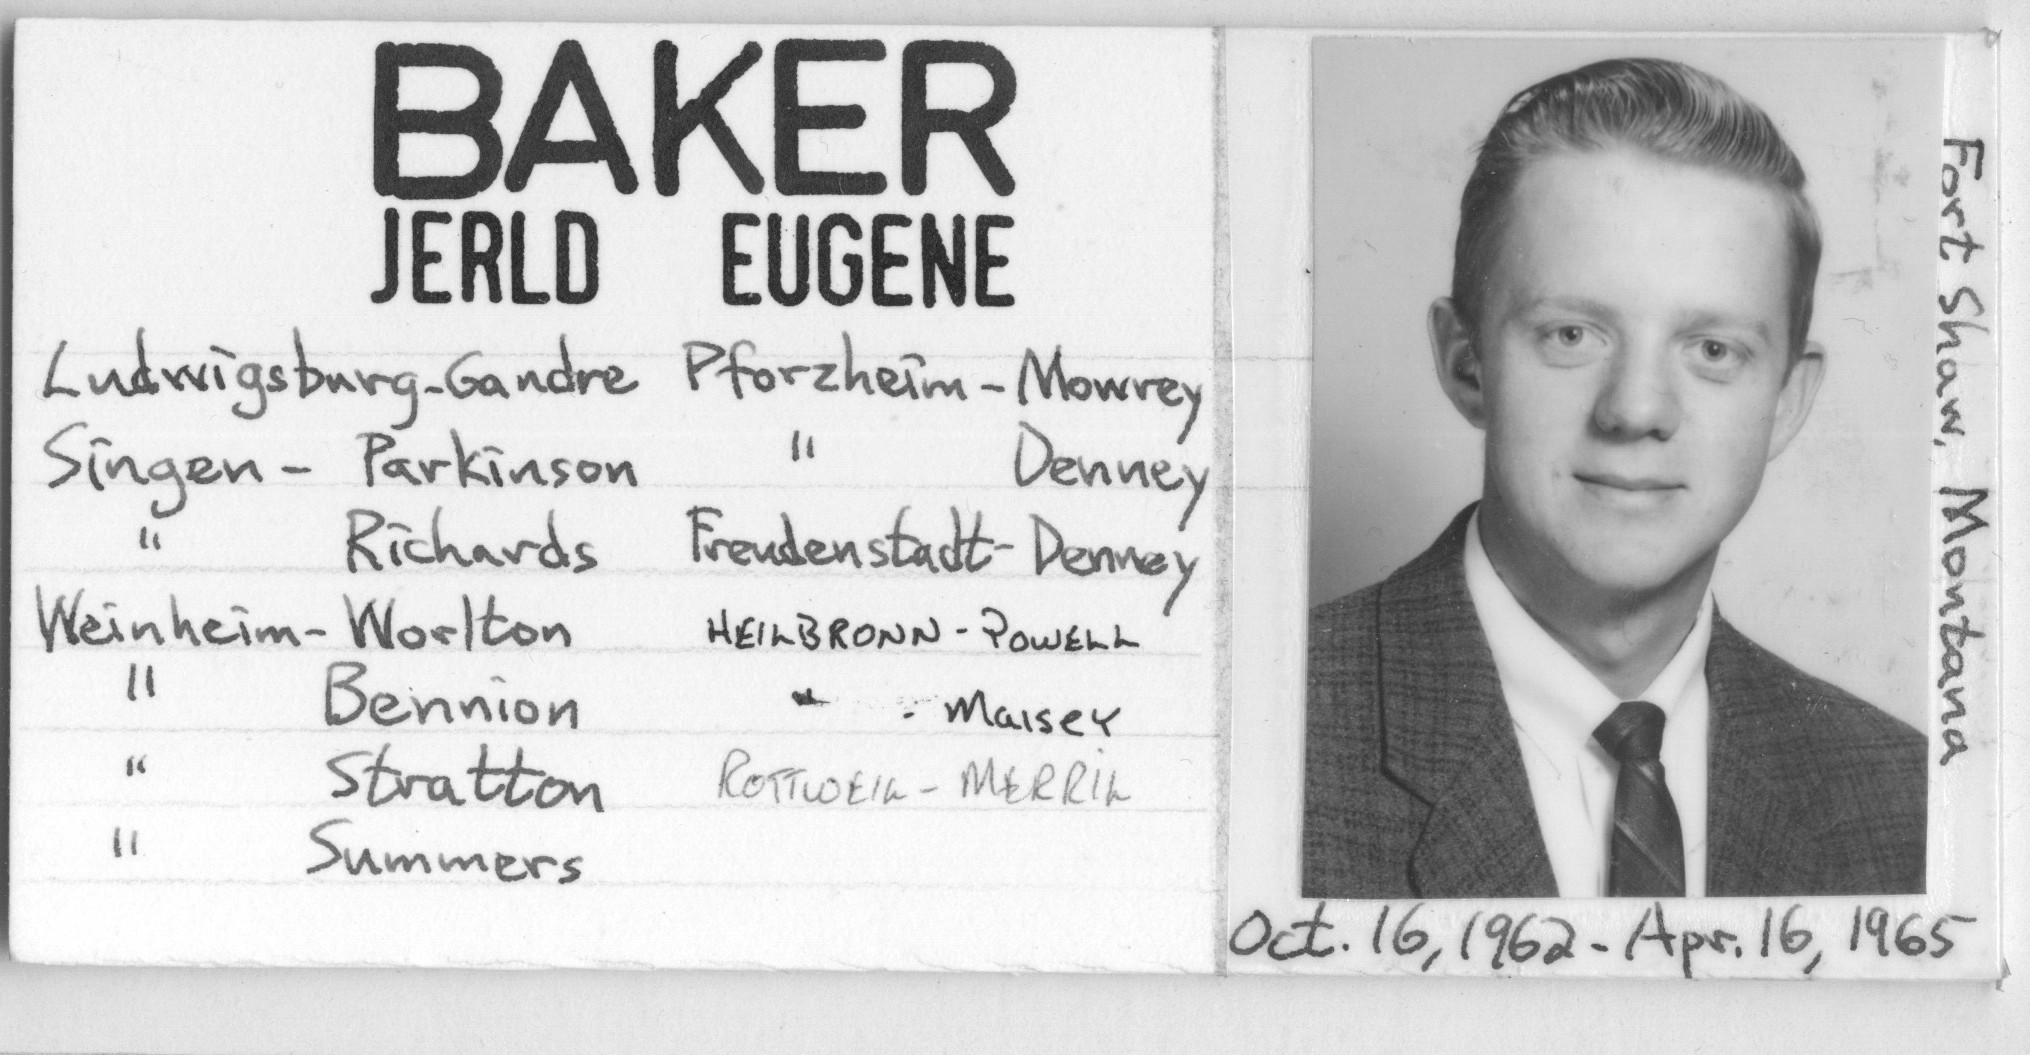 Baker, Jerld Eugene